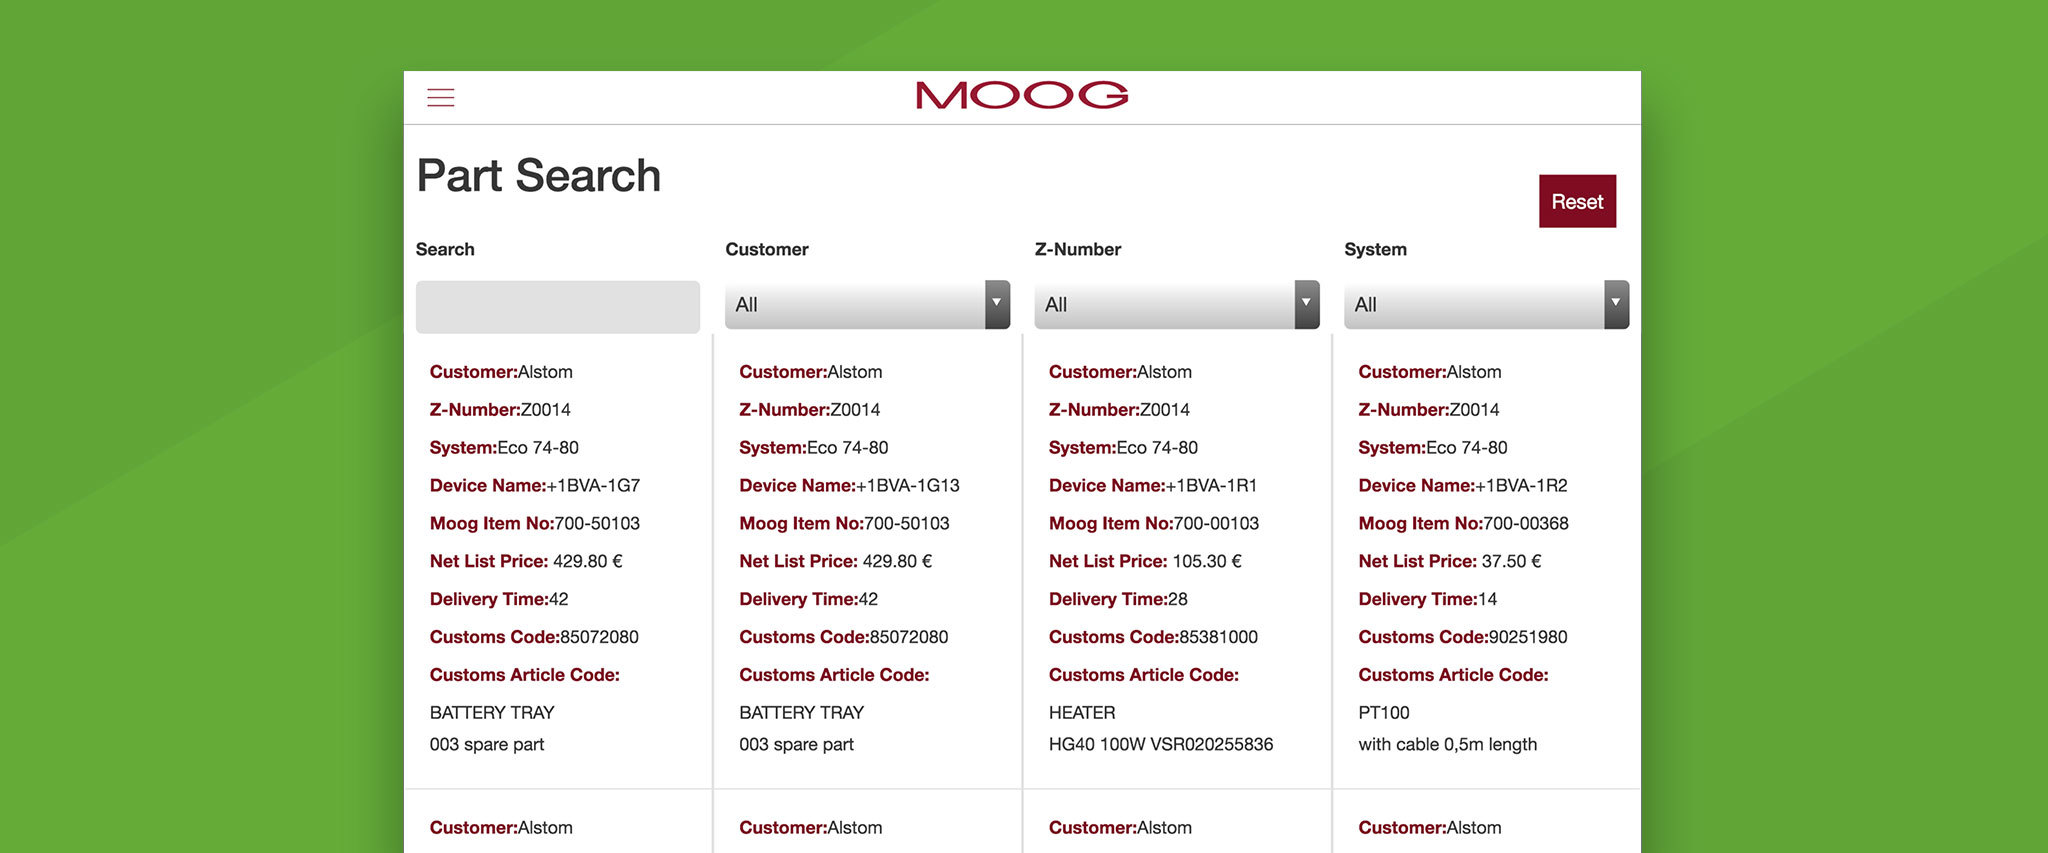 Moog Industrial App Gallery